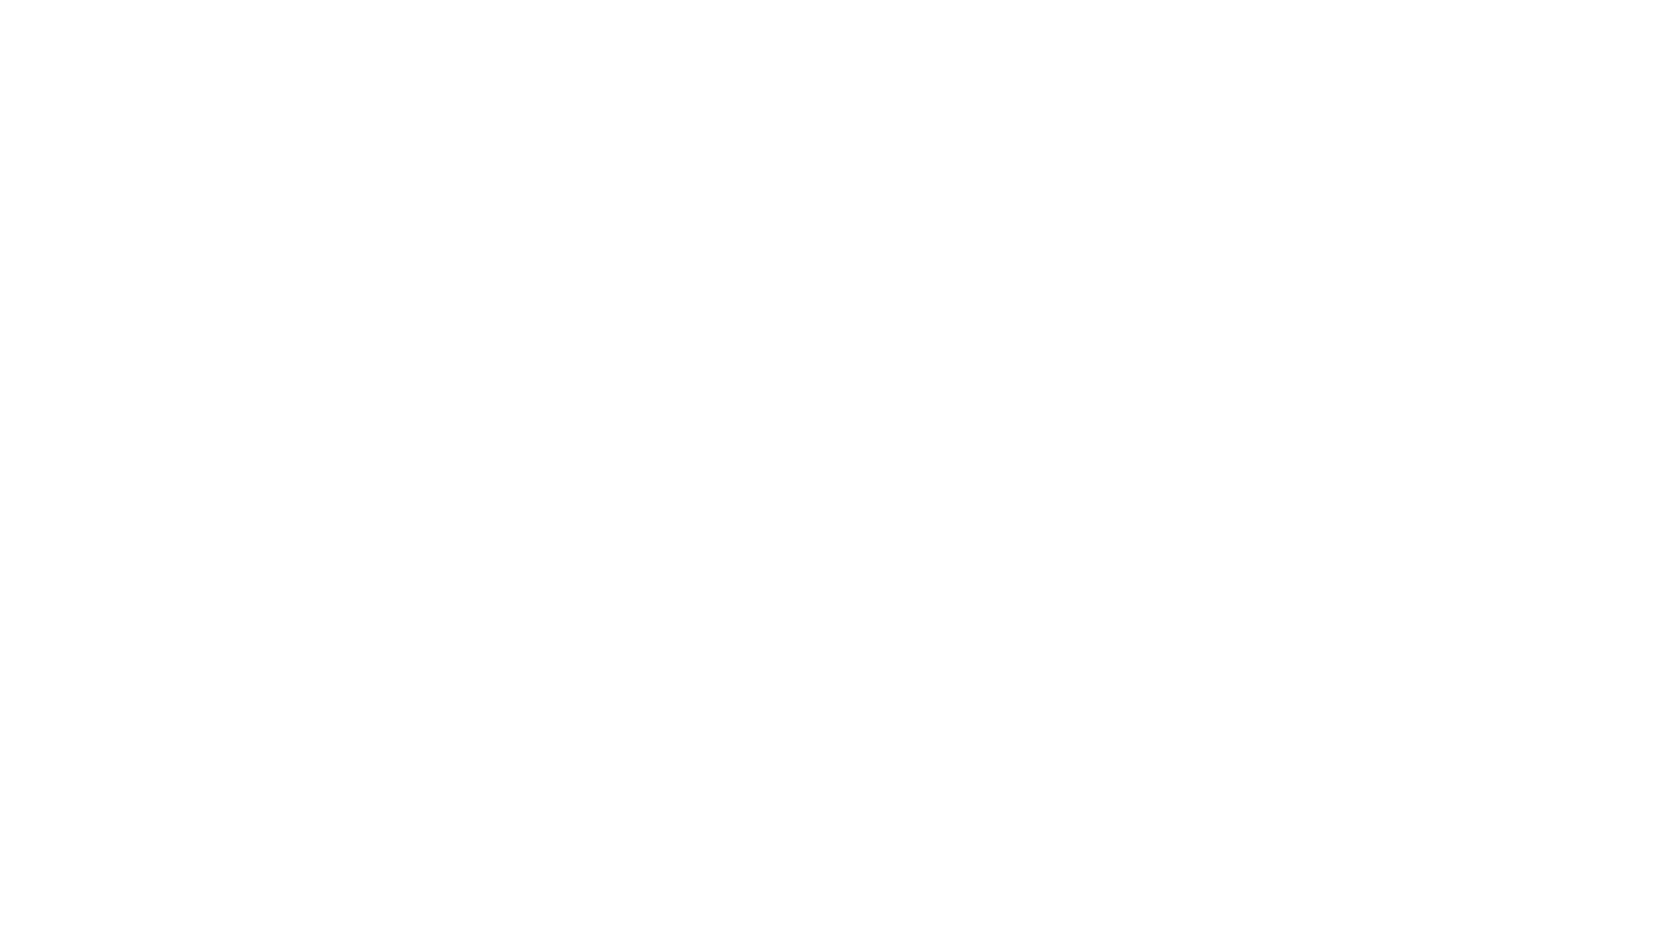 logo Augma white